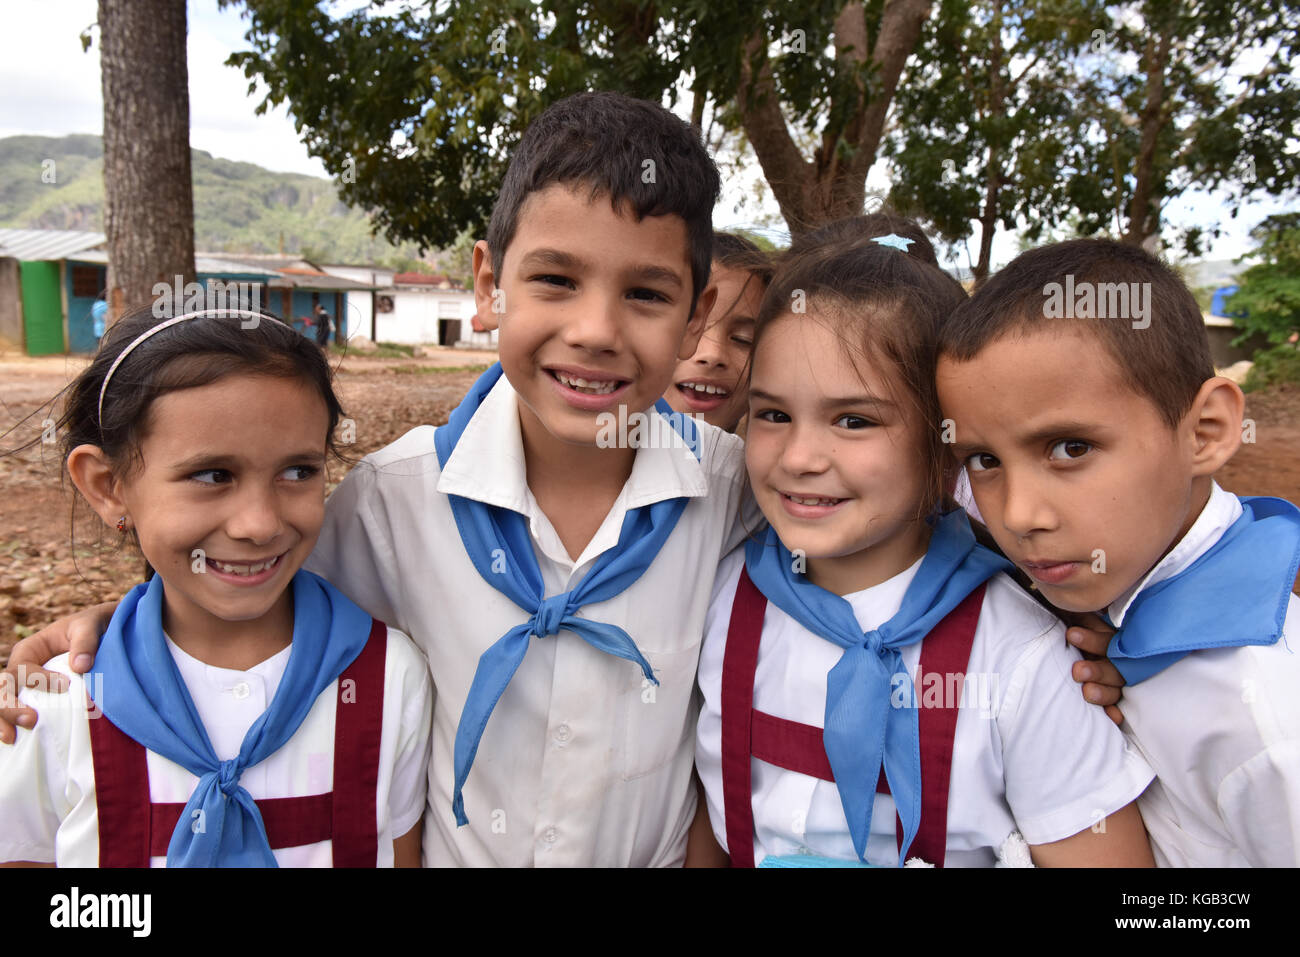 Cuban schoolchildren Stock Photo